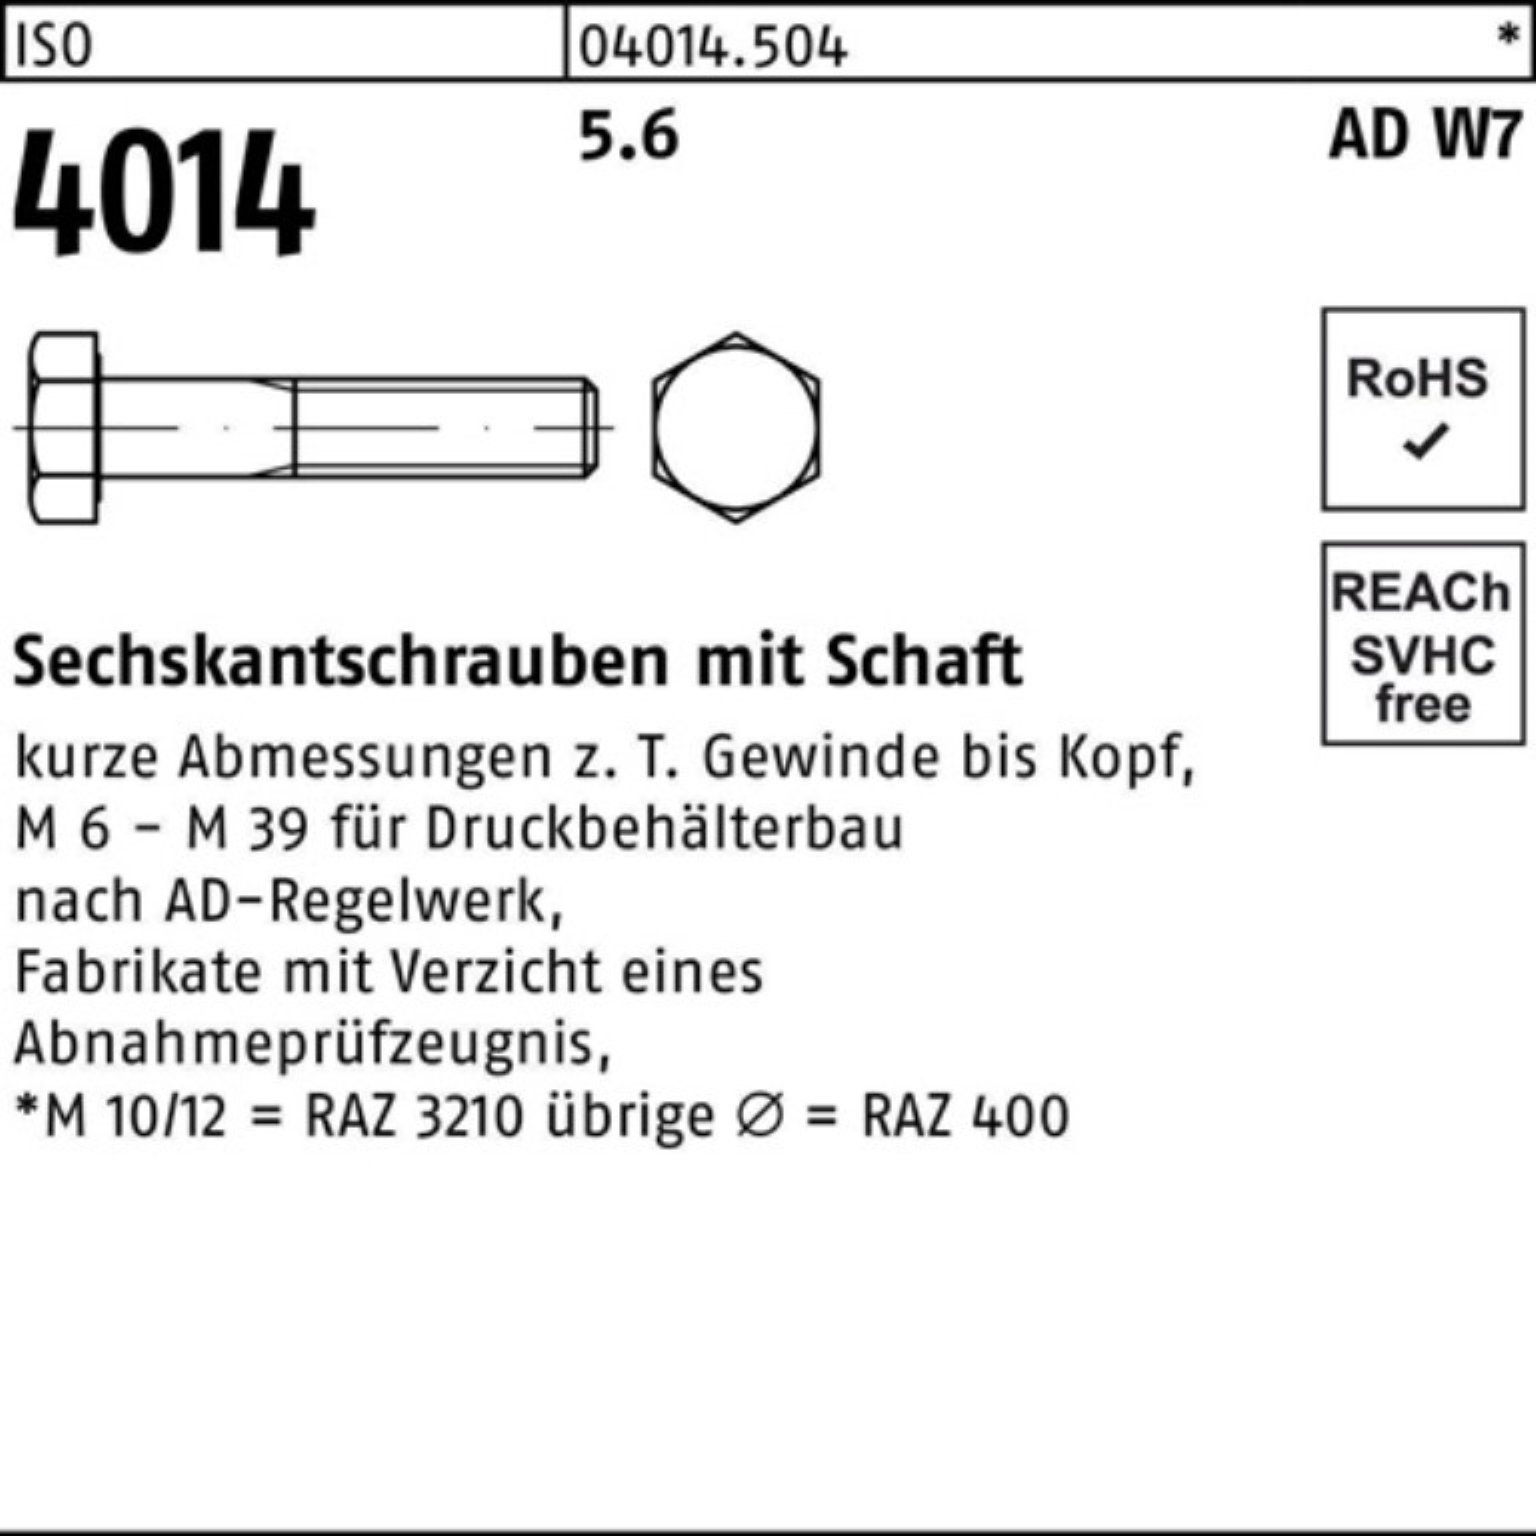 Bufab Sechskantschraube 100er Pack Sechskantschraube W7 Schaft 10 Stück 110 M24x 4014 5.6 ISO